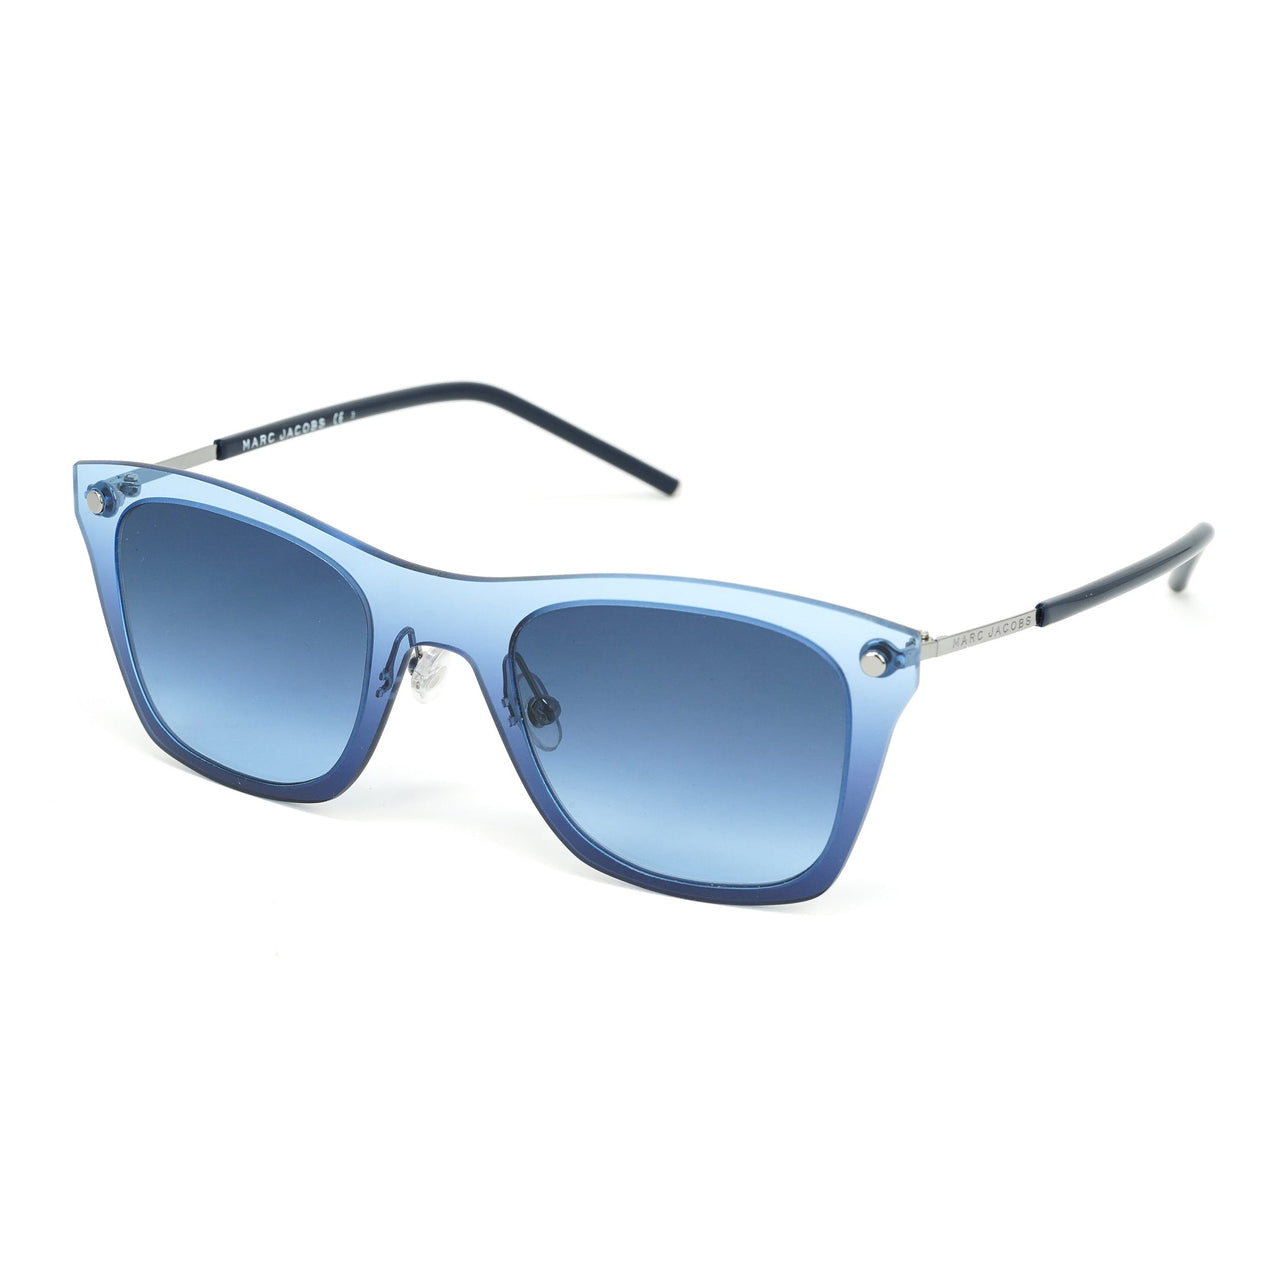 Marc Jacobs Unisex Square Sunglasses Blue on Blue MARC 25/S TVN